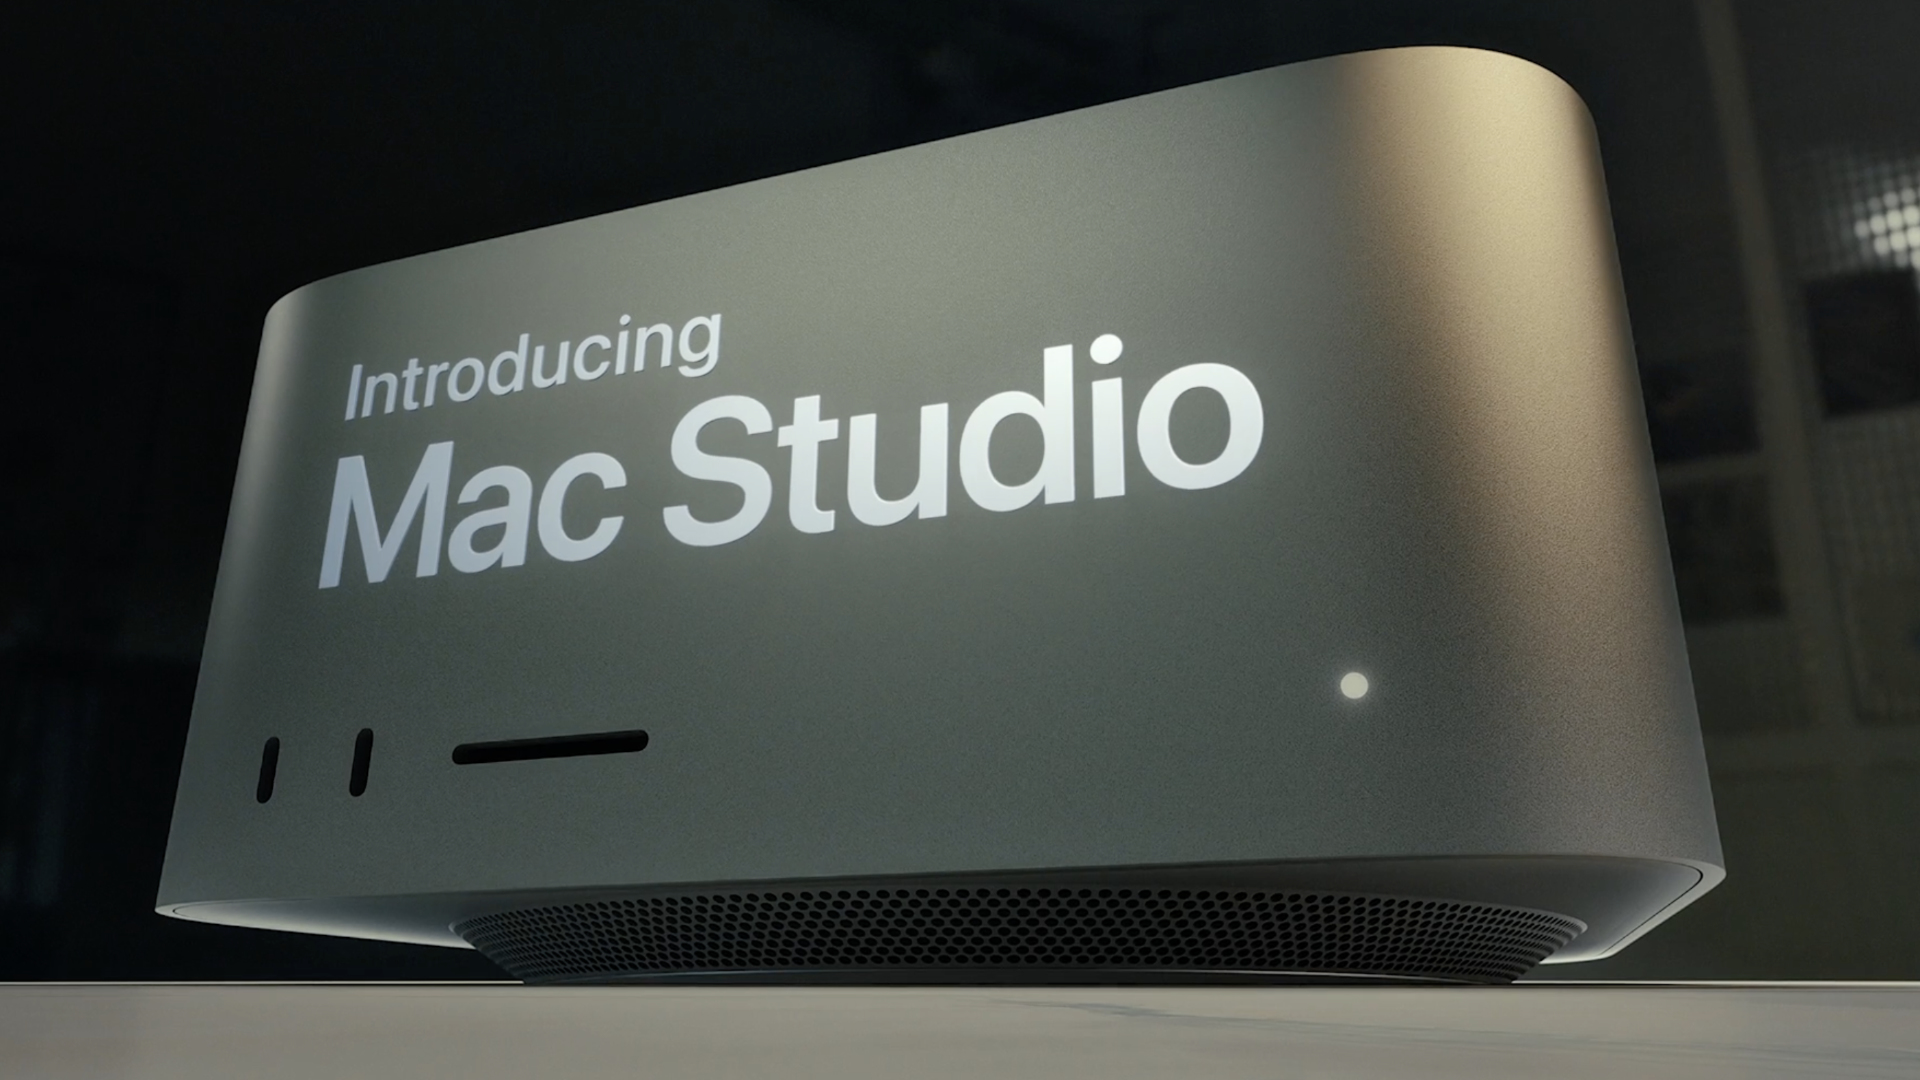 Mac Studioデスクトップ型PC